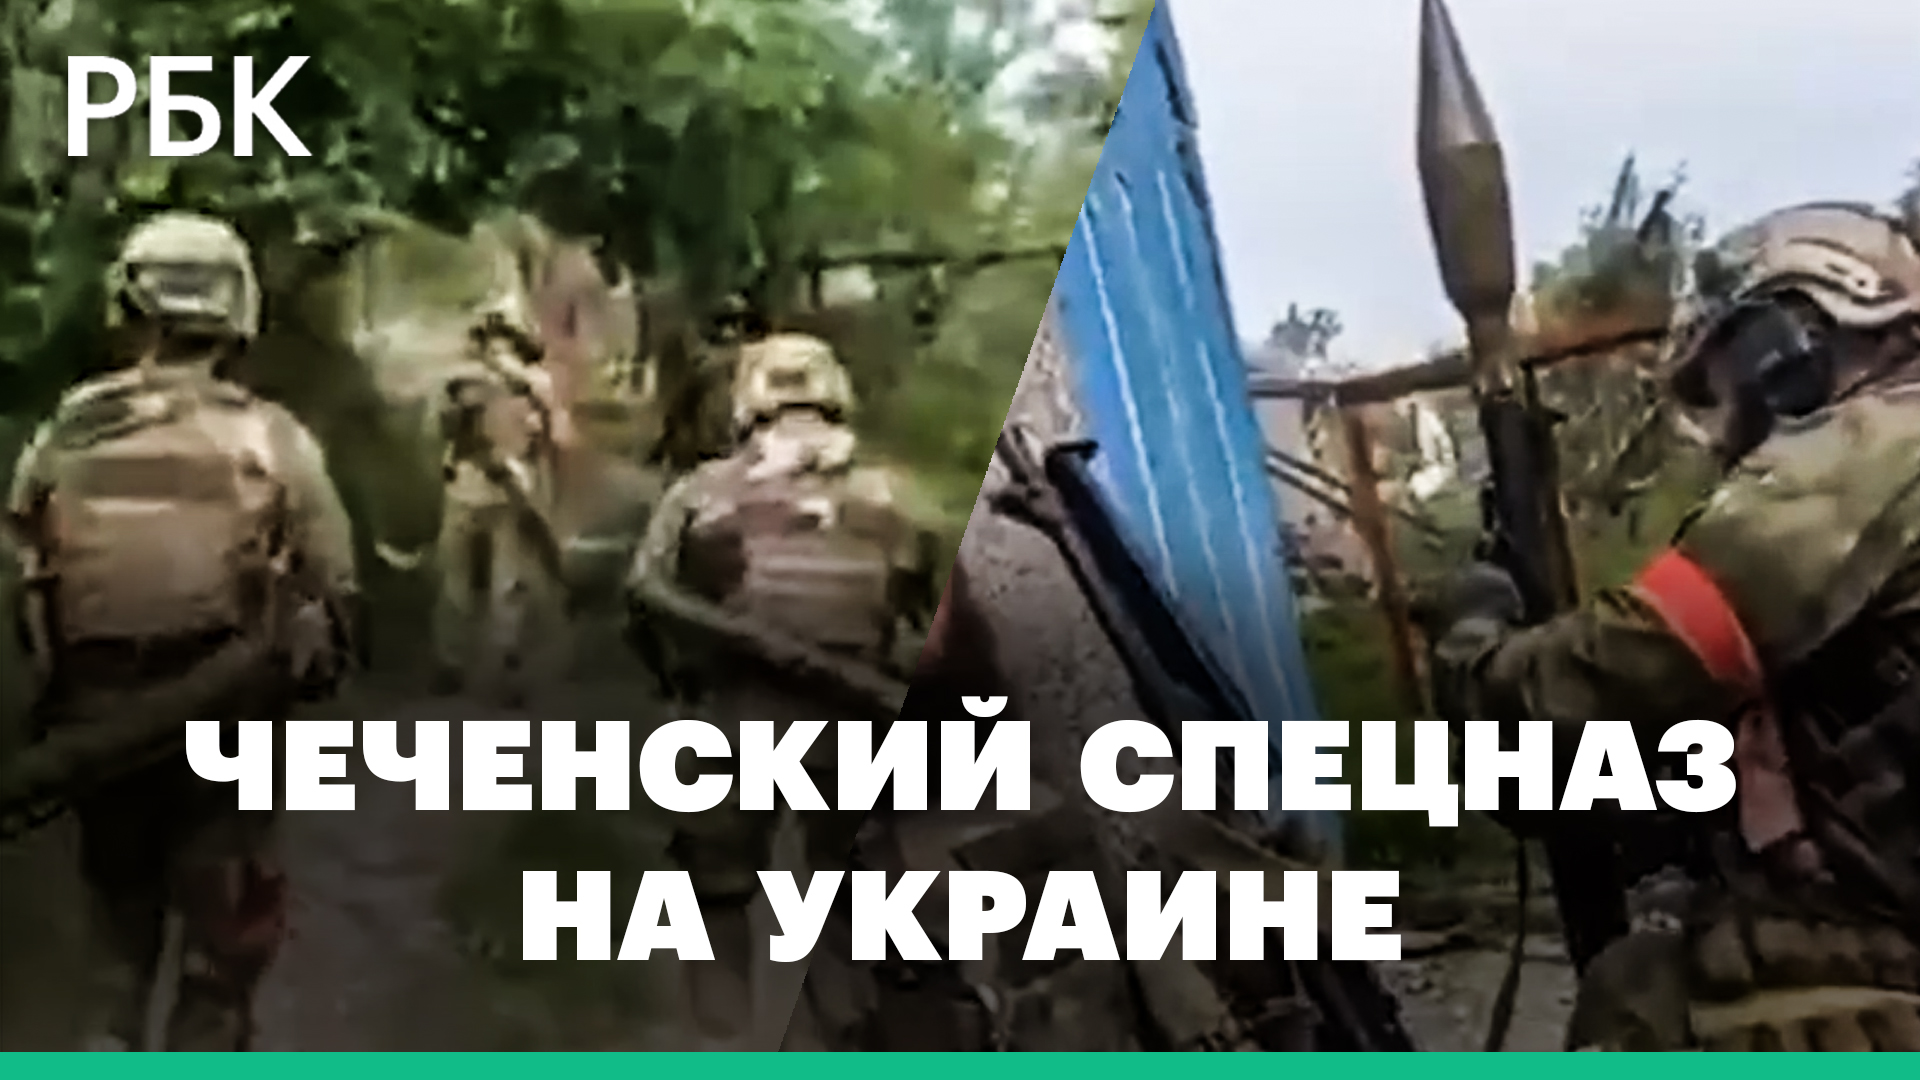 Кадыров показал кадры работы чеченского спецназа на Украине